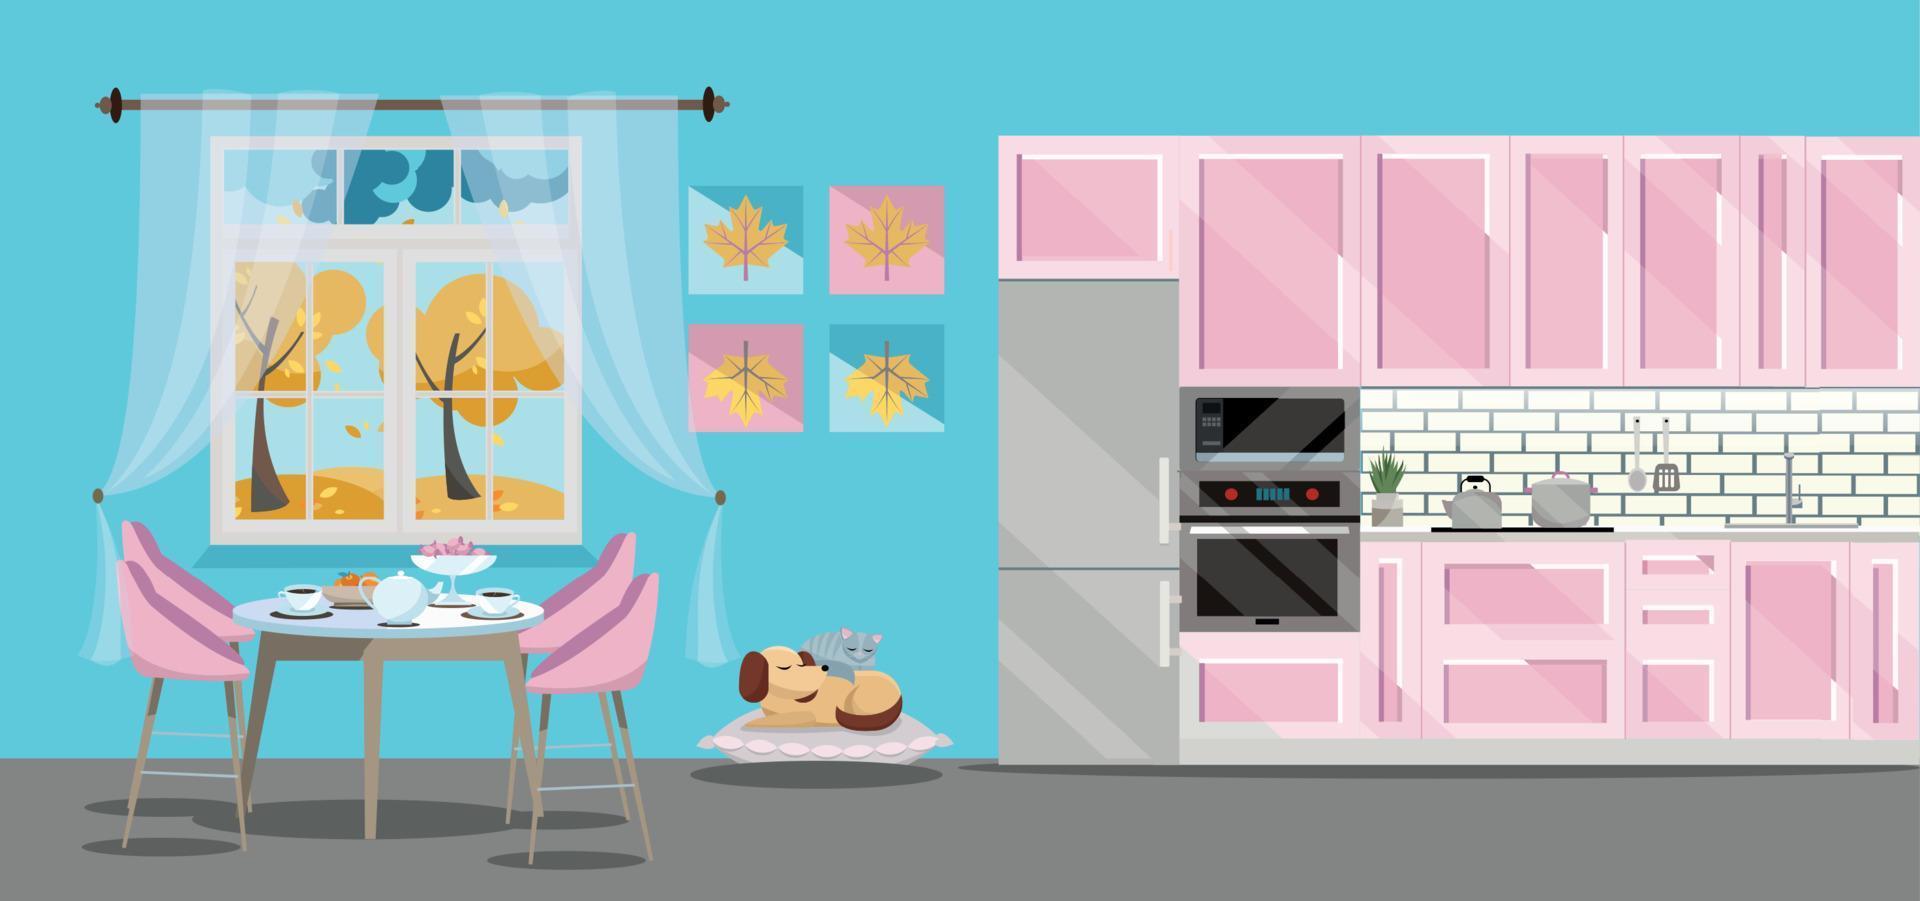 conjunto de cozinha de ilustração plana de cor rosa sobre fundo azul com acessórios de cozinha de cachorro de gato ang - geladeira, forno, microondas. mesa de jantar pela janela com chá e bule. fora da janela é outono. vetor